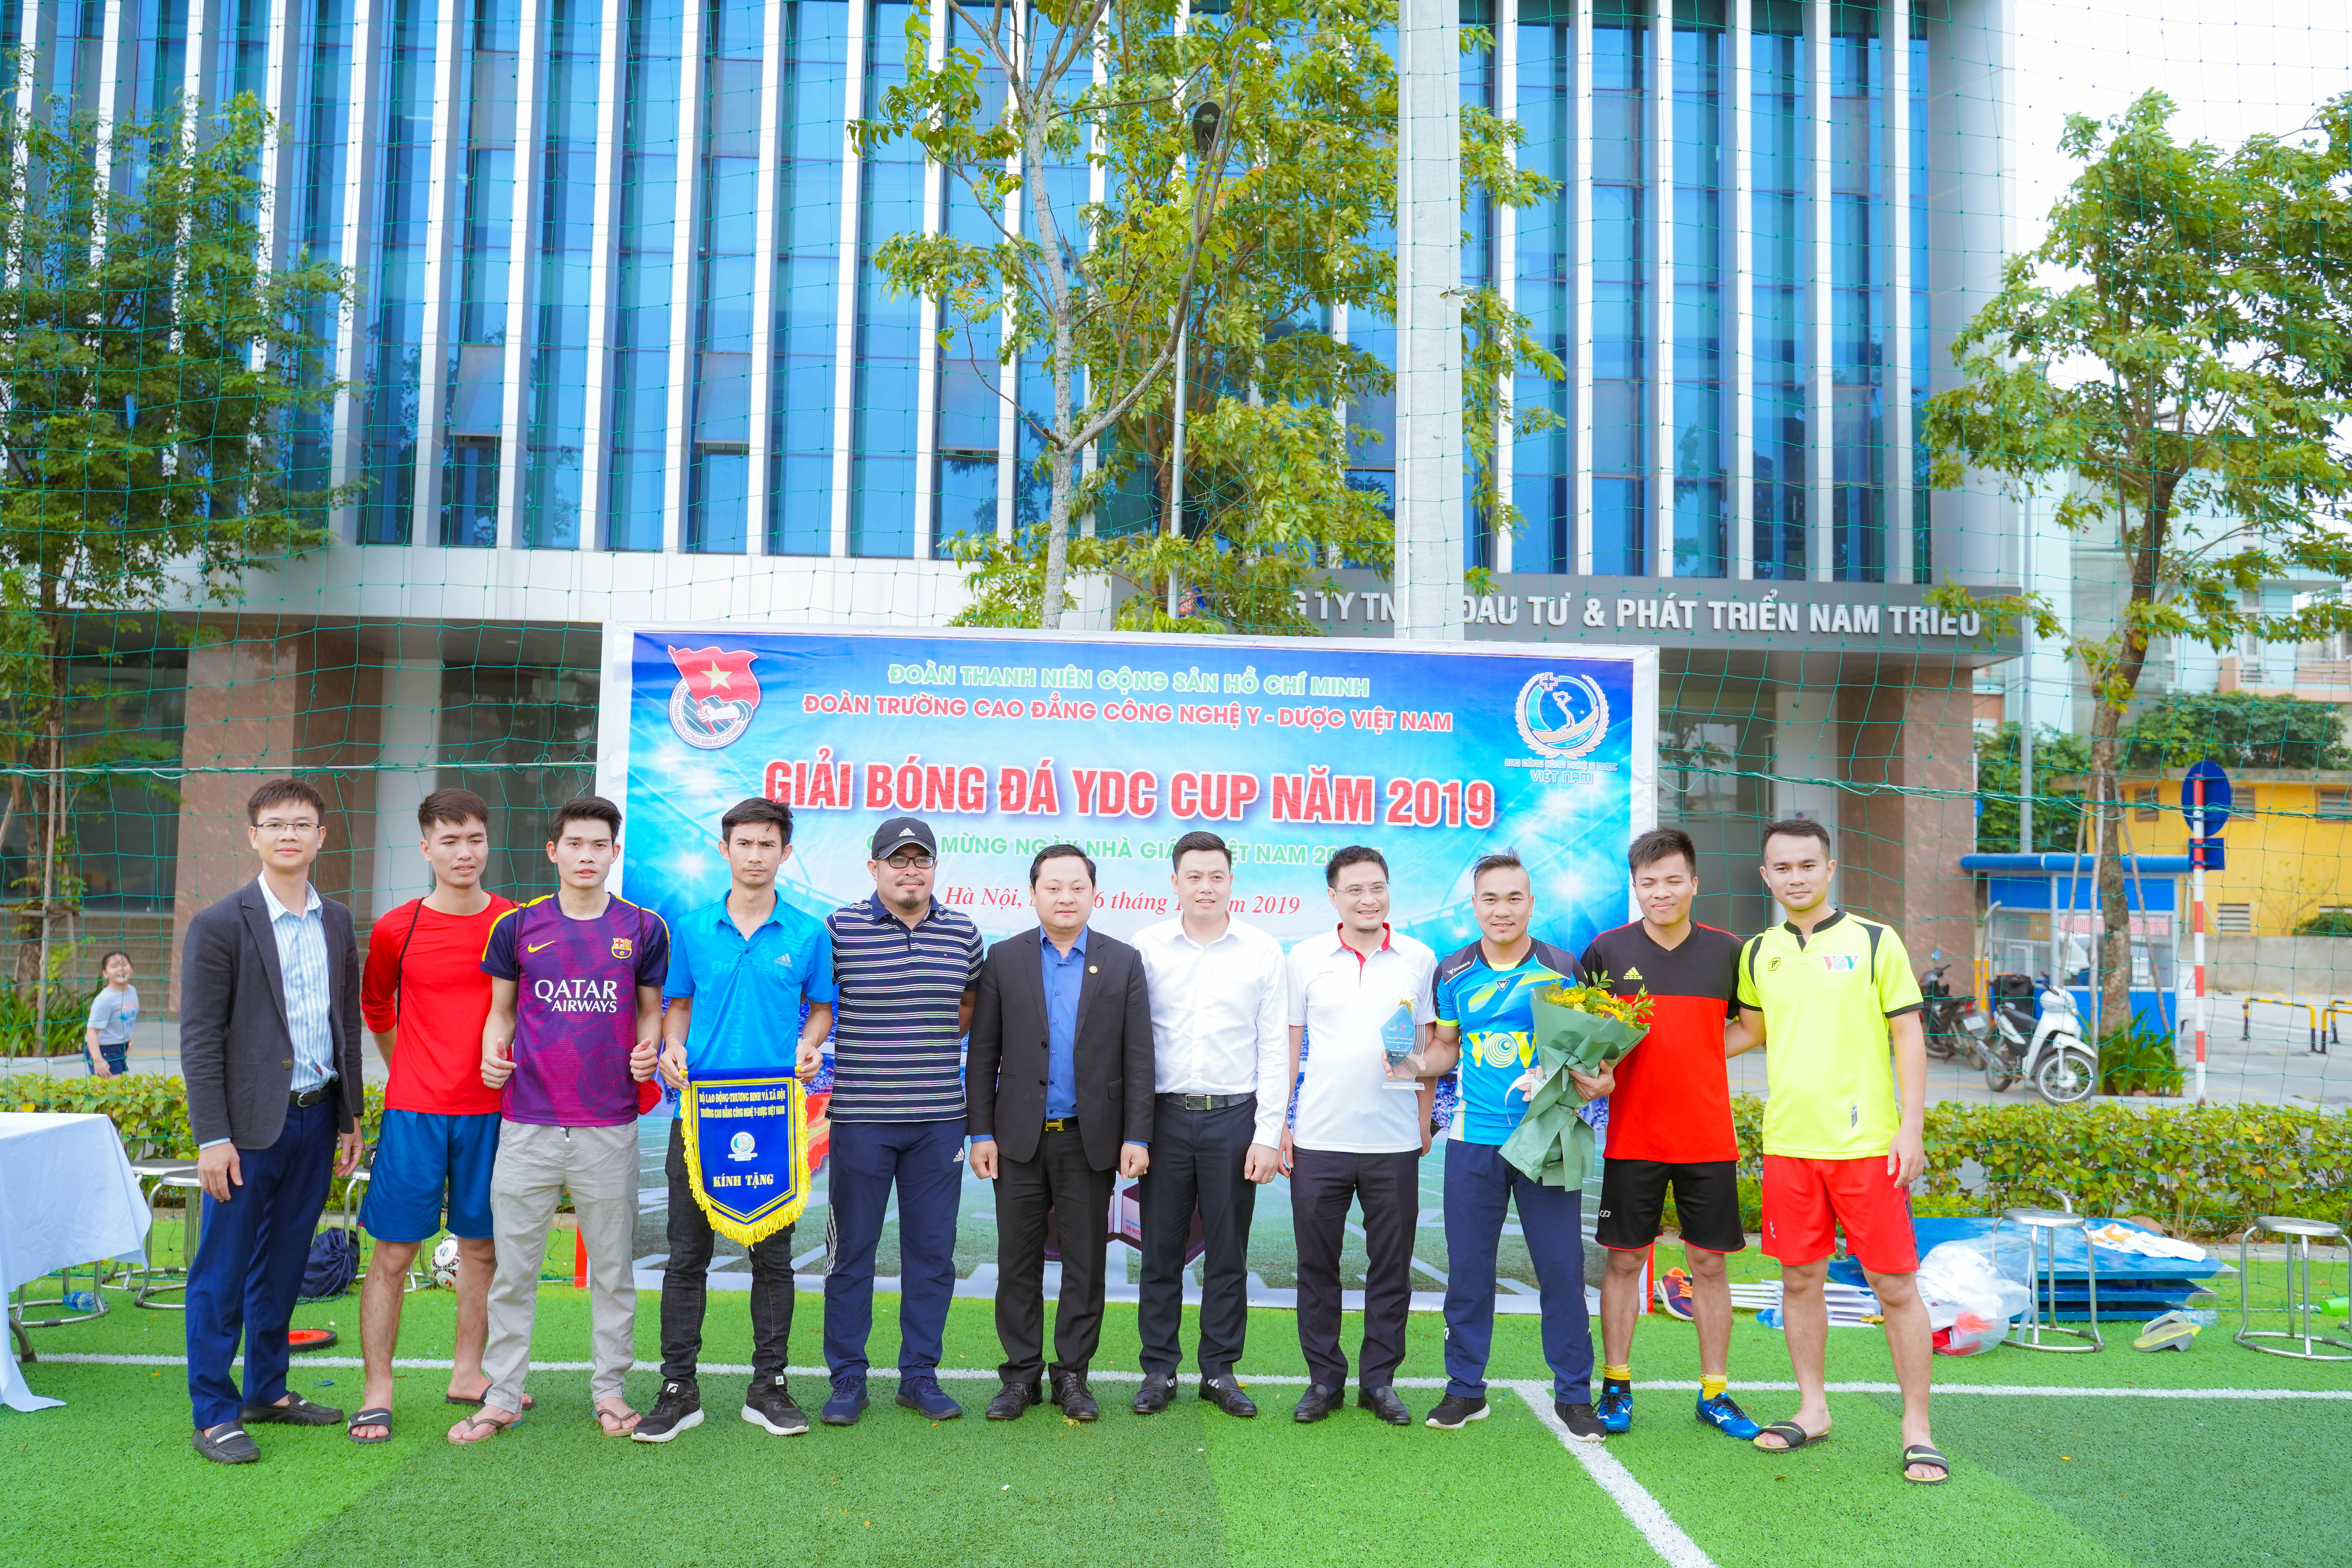 Thầy Nguyễn Văn Tuấn - Hiệu trưởng Nhà trường tặng Cup và cờ lưu niệm cho đội bóng liên chi hội nhà báo VOV